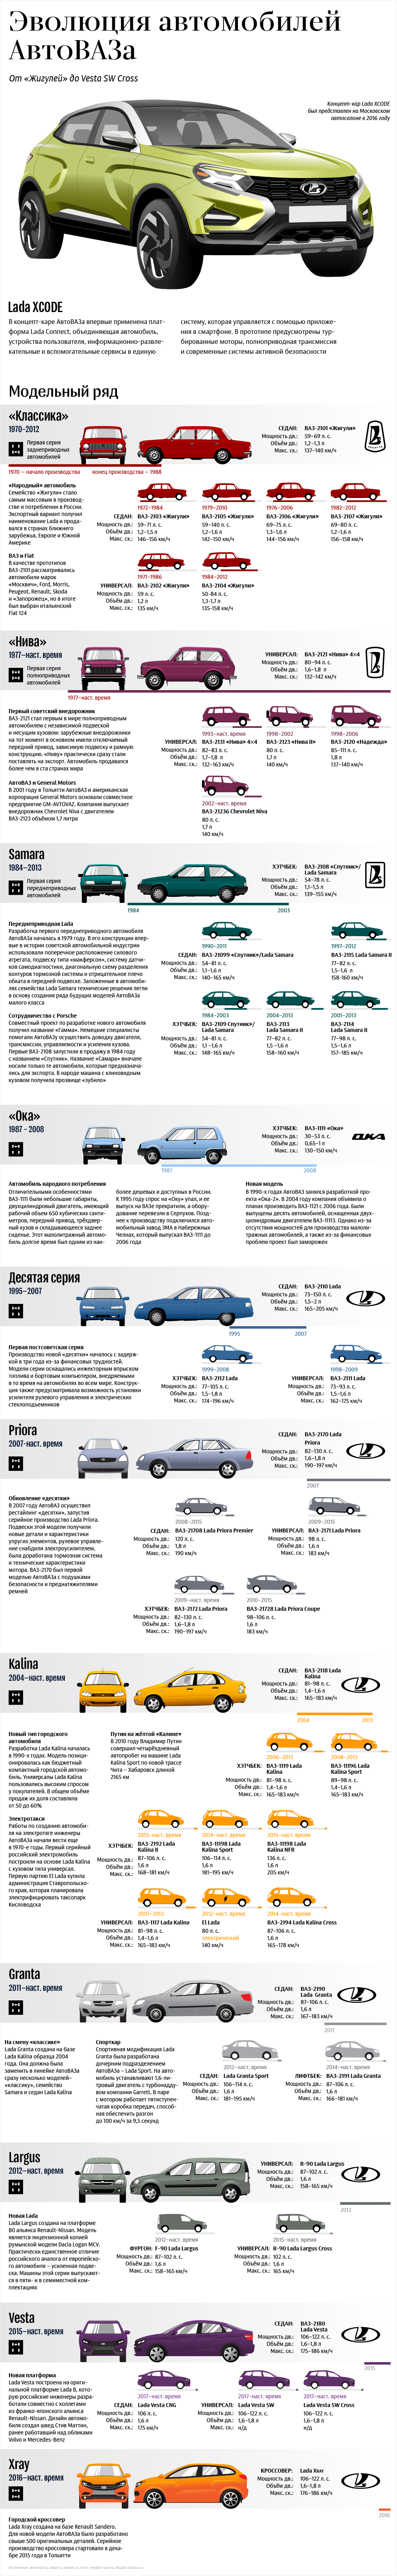 Эволюция автомобилей АвтоВАЗа - Sputnik Грузия